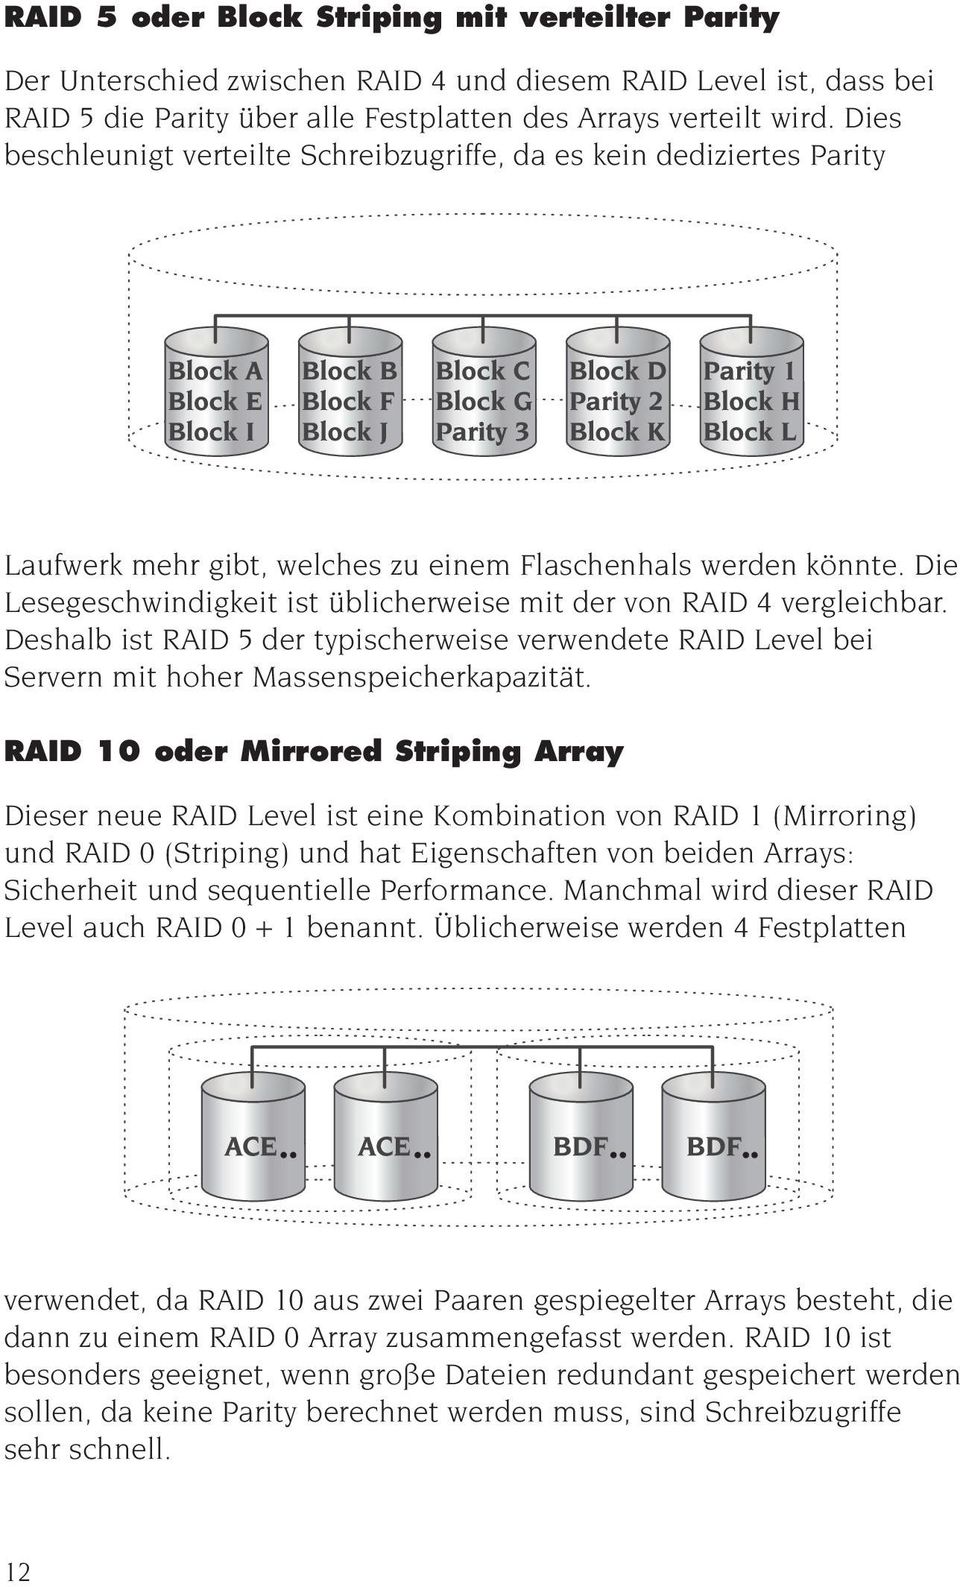 Die Lesegeschwindigkeit ist üblicherweise mit der von RAID 4 vergleichbar. Deshalb ist RAID 5 der typischerweise verwendete RAID Level bei Servern mit hoher Massenspeicherkapazität.